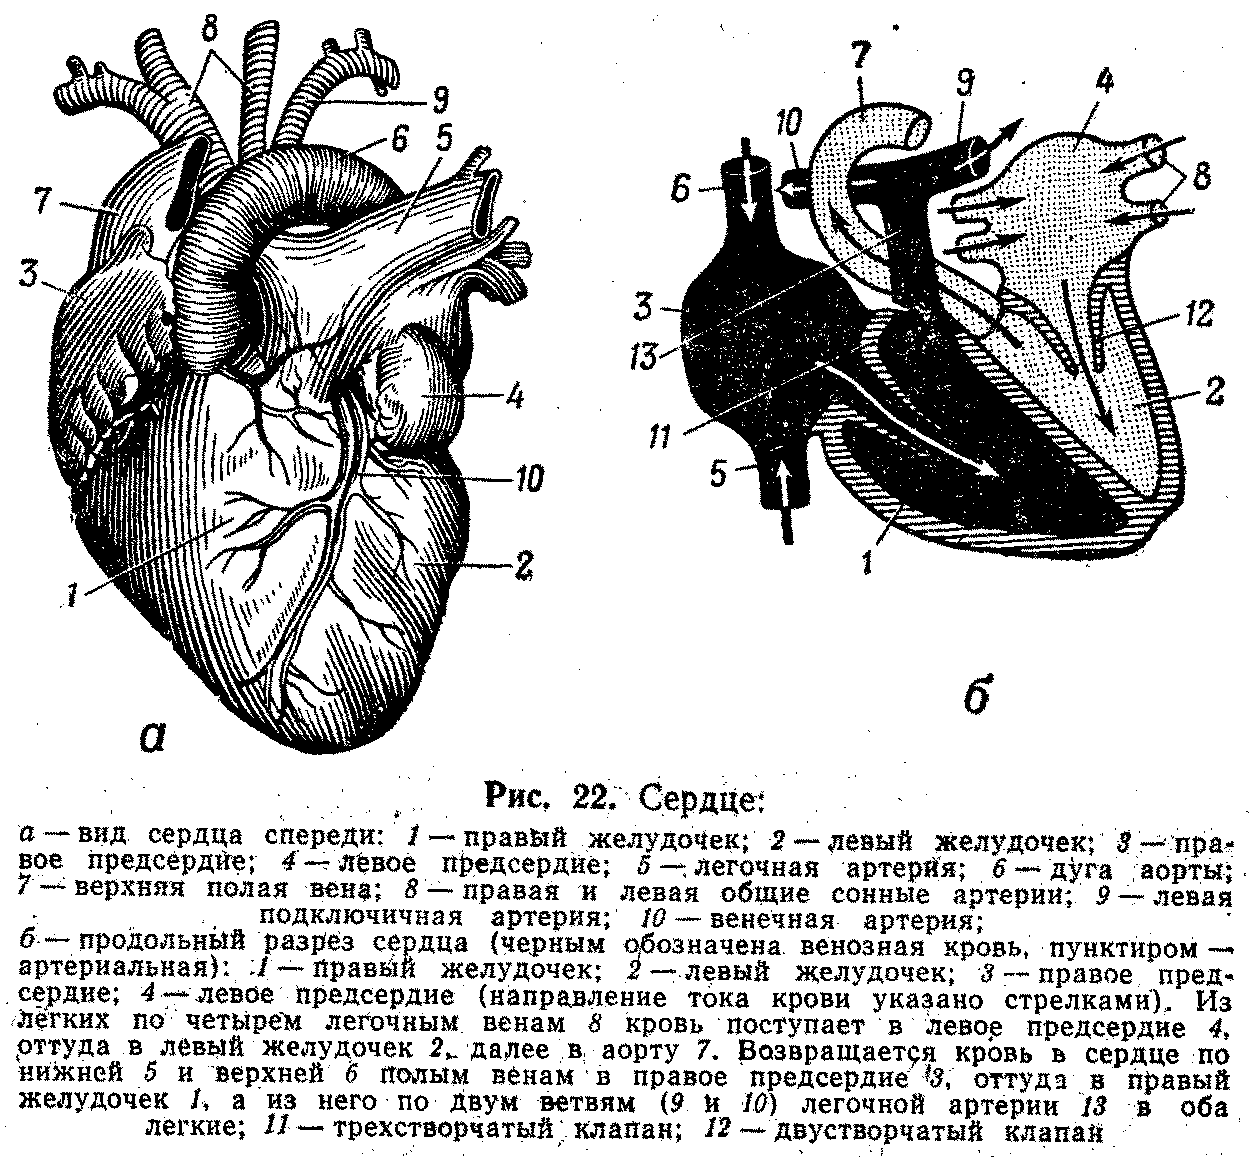 Правый желудочек отделен от правого предсердия. Строение правого предсердия сердца. Сердце анатомия желудочки и предсердия. Строение сердца легочная артерия. Строение сердца желудочки предсердия.